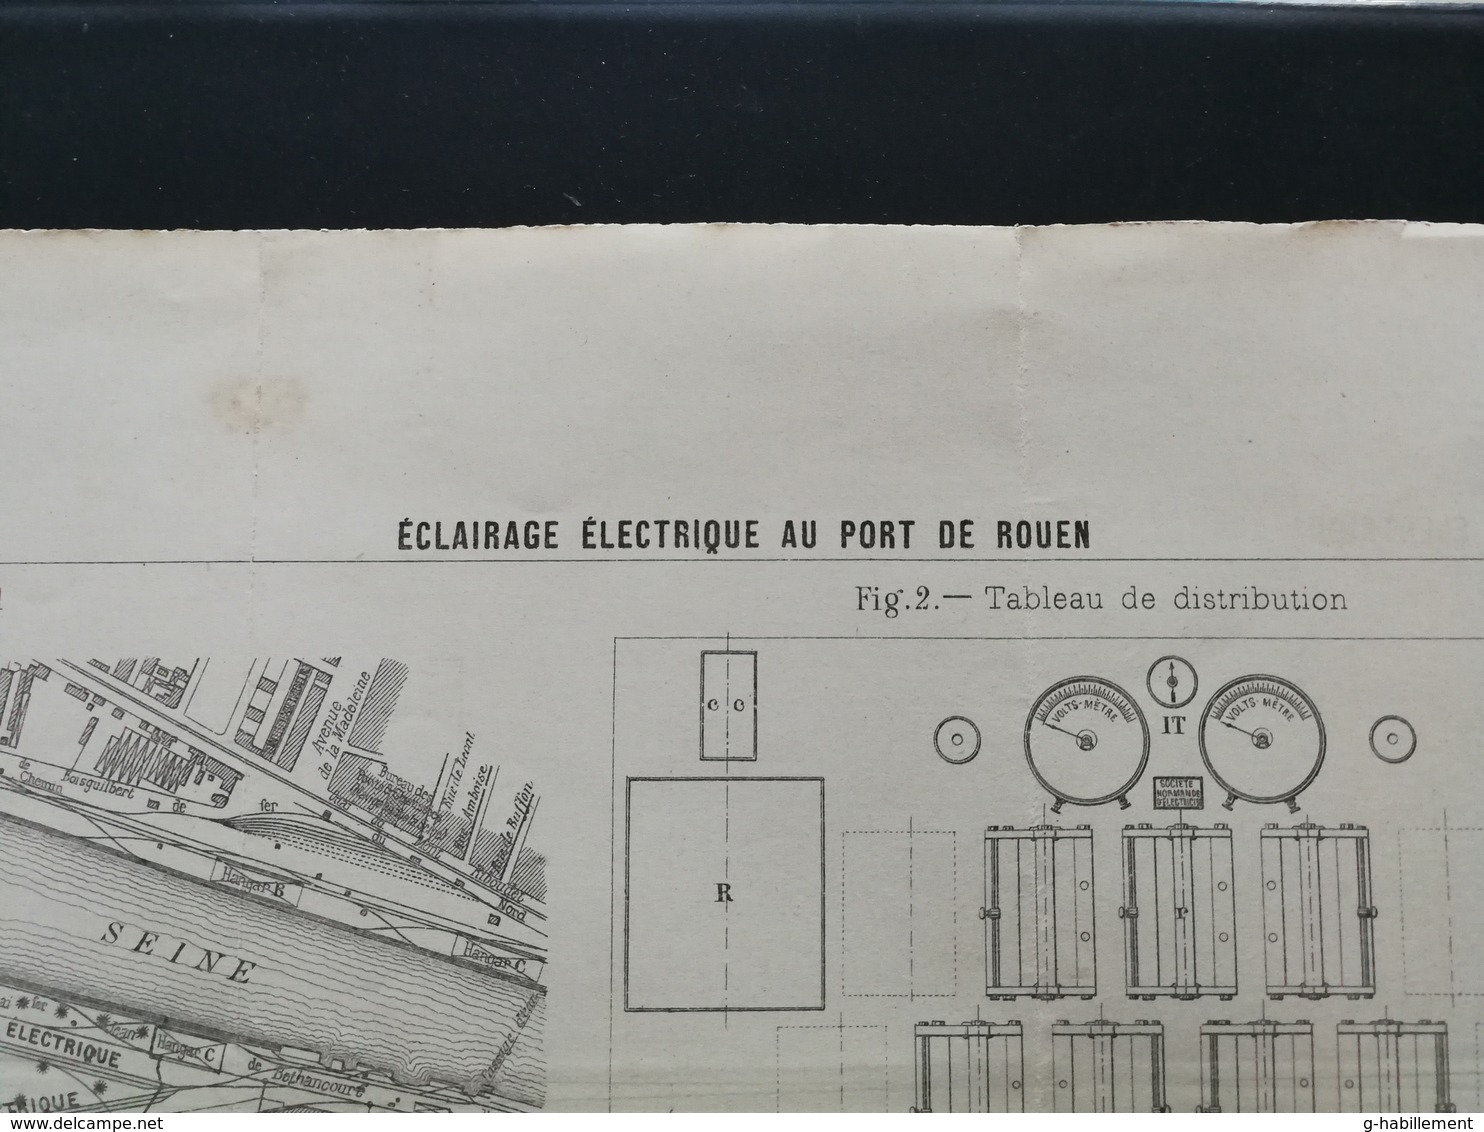 ANNALES DES PONTS Et CHAUSSEES (Dep 76) - Plan D'Eclairage électrique Au Port De Rouen - Imp L.Courtier 1898 (CLE68) - Tools